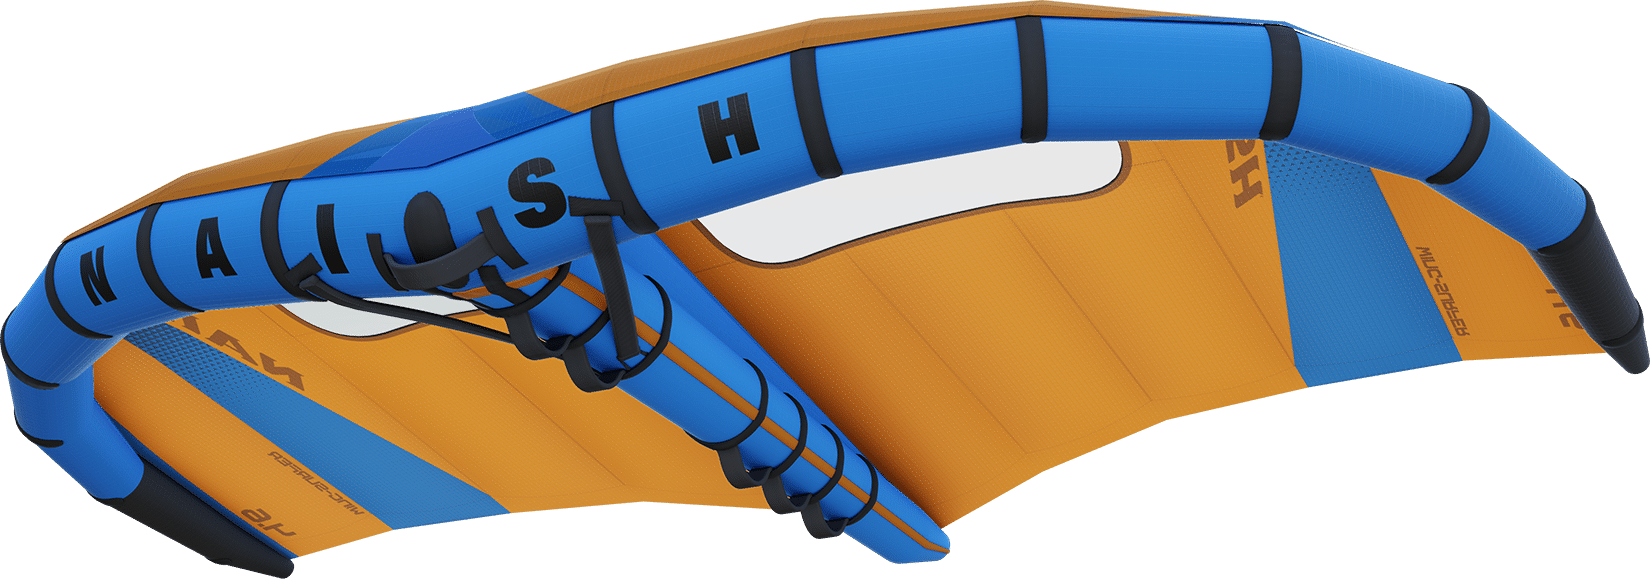 Naish Wing Surfer S26 MK3 - Naish Authorized Dealer - Gold Coast